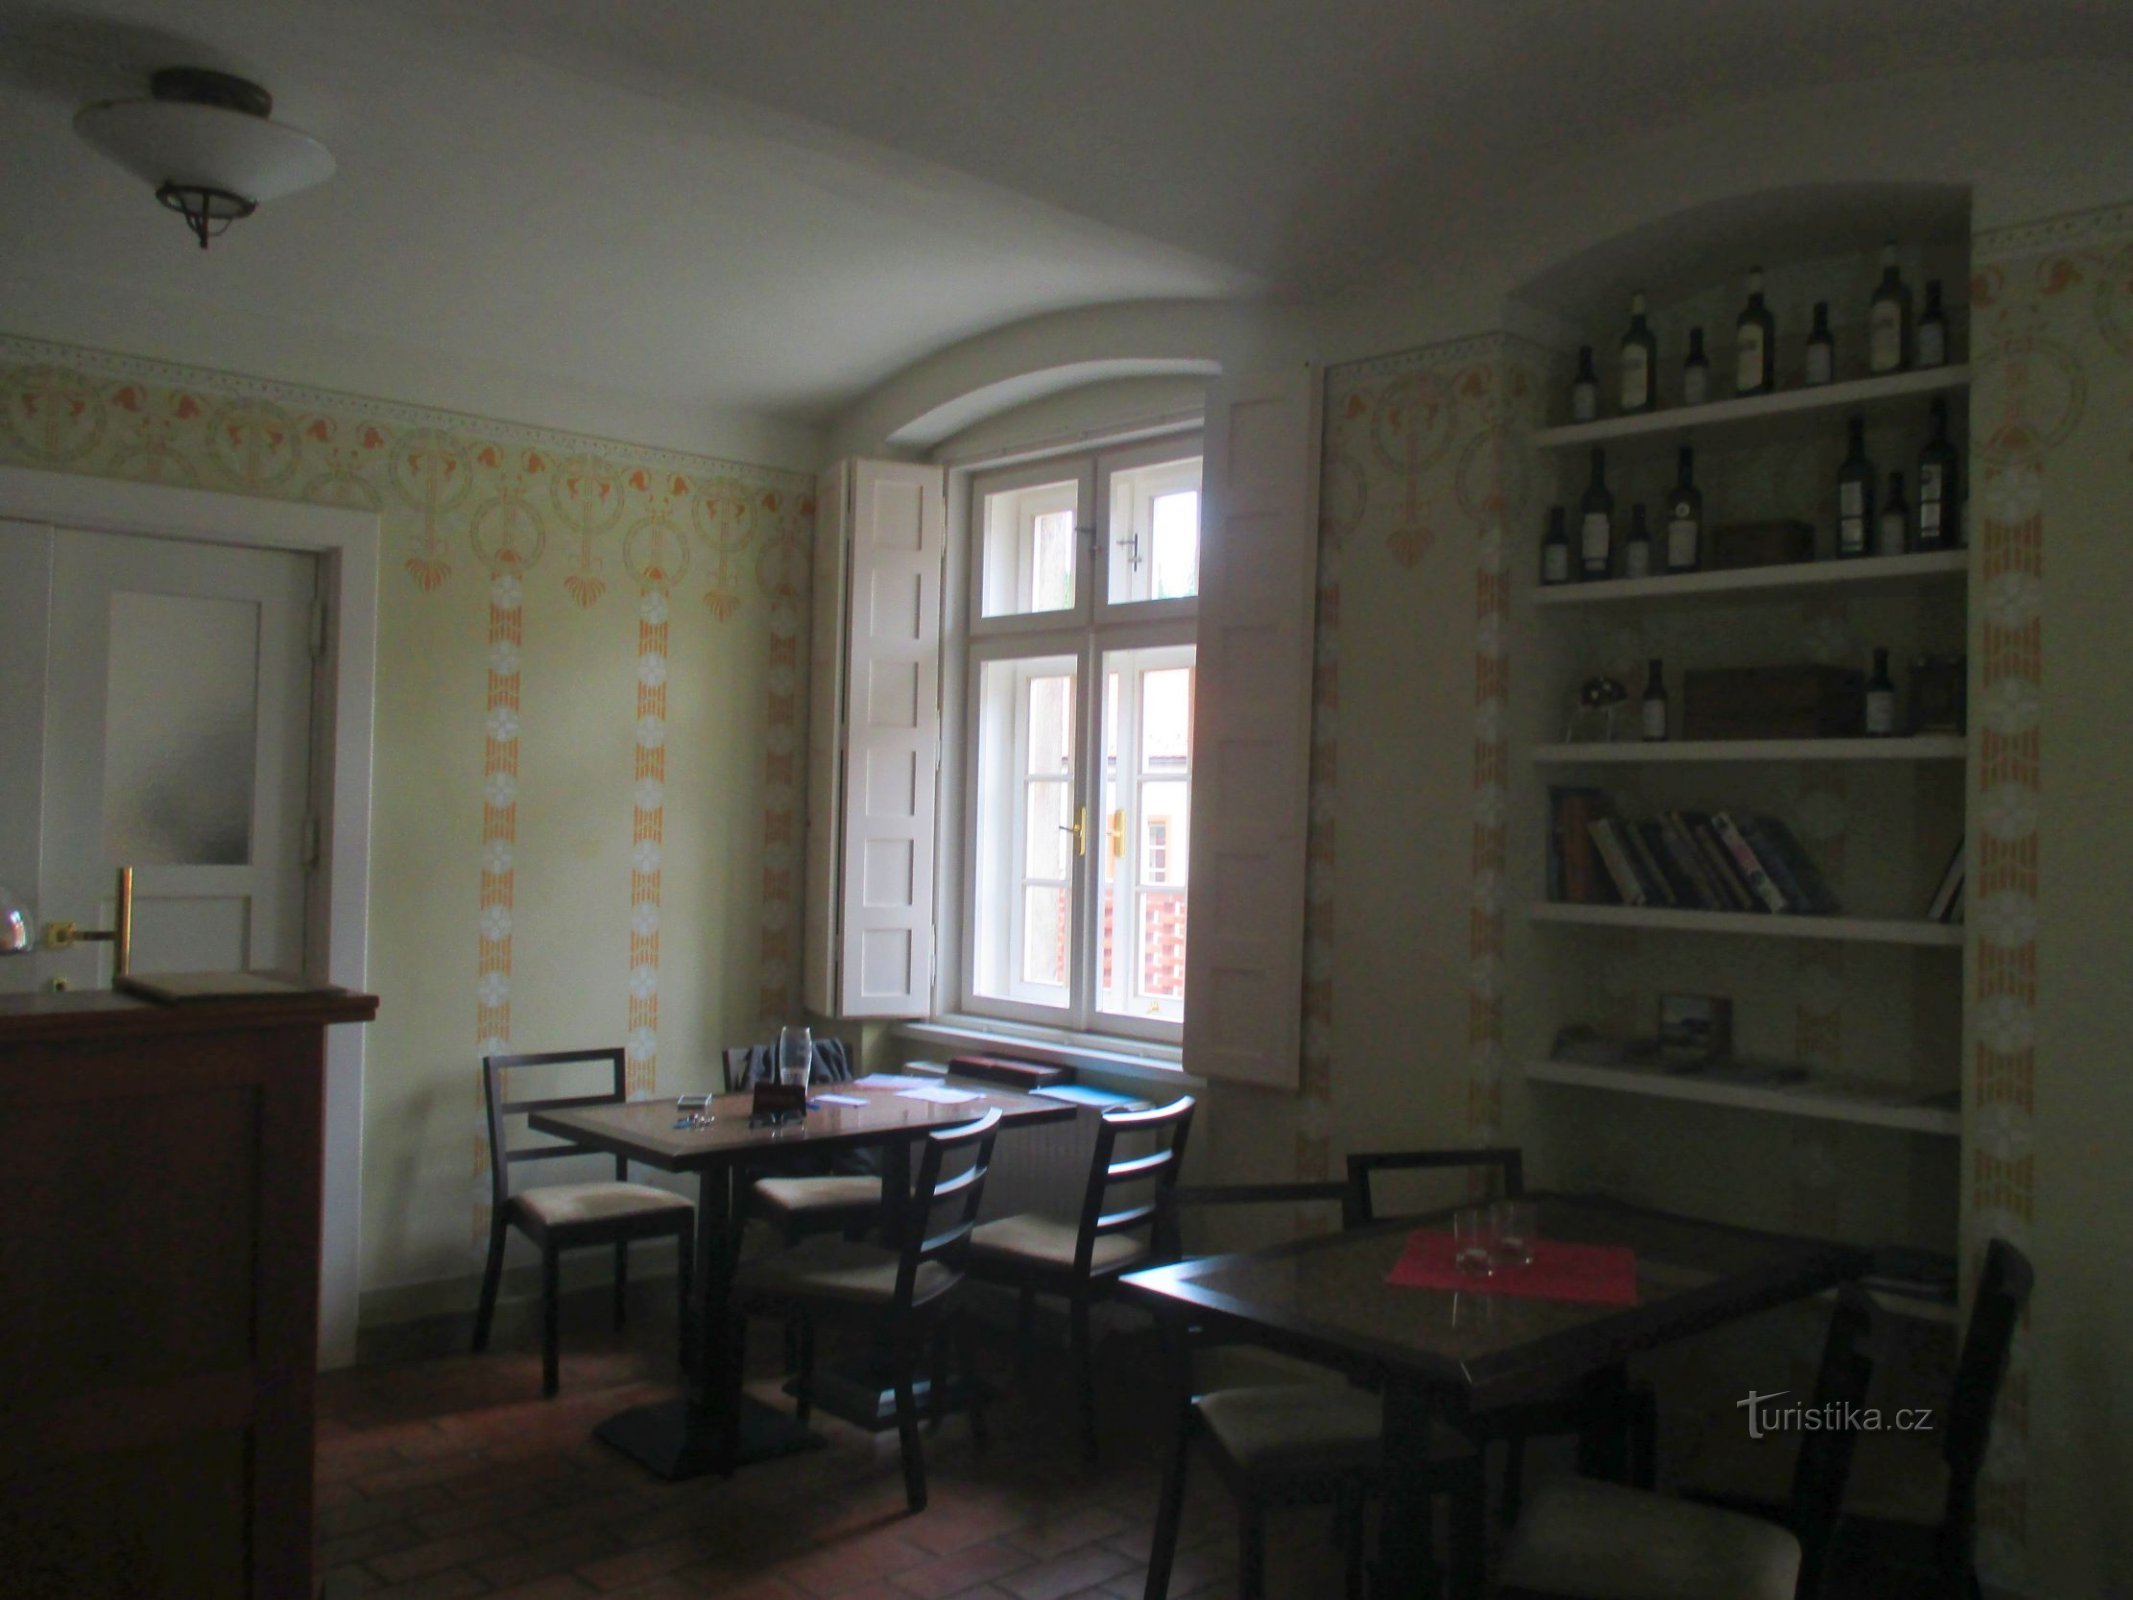 Кафе «Синагога» розташоване в колишній квартирі рабина з ретельно відреставрованим інтер'єром.